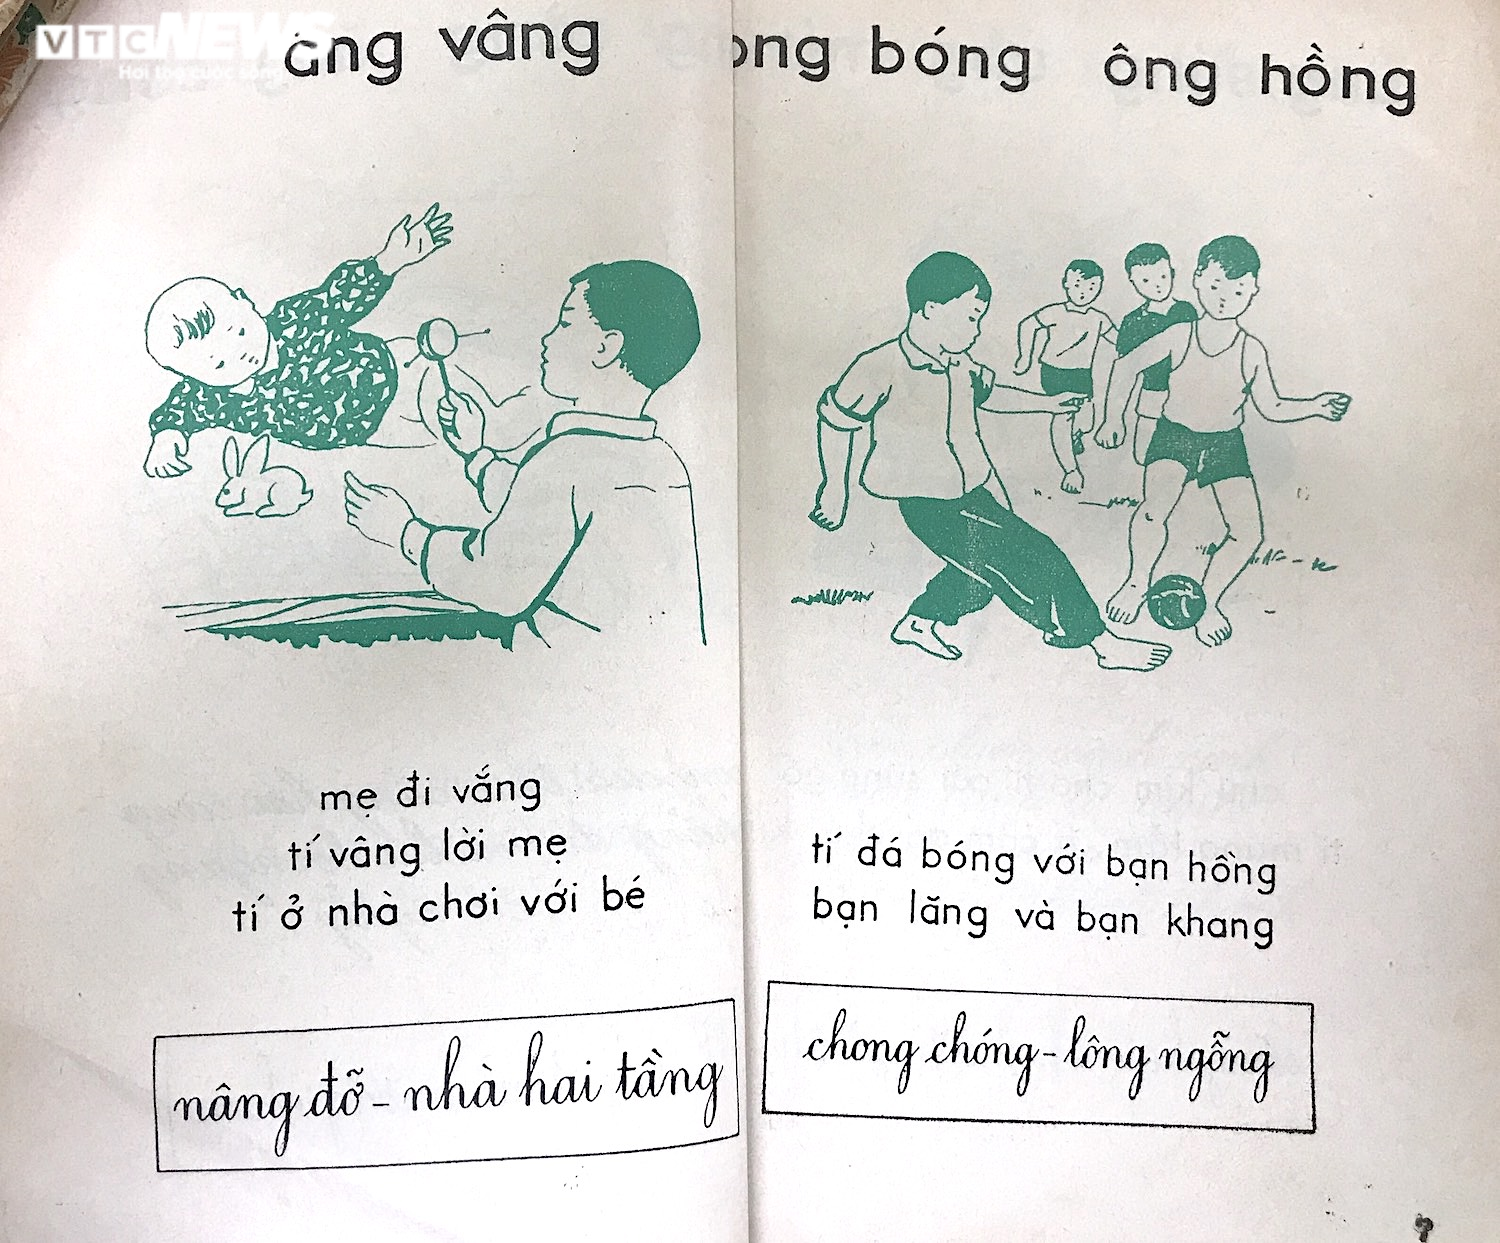  Cha chú chúng ta học Tiếng Việt lớp 1 thế nào trong những năm kháng chiến? - 2